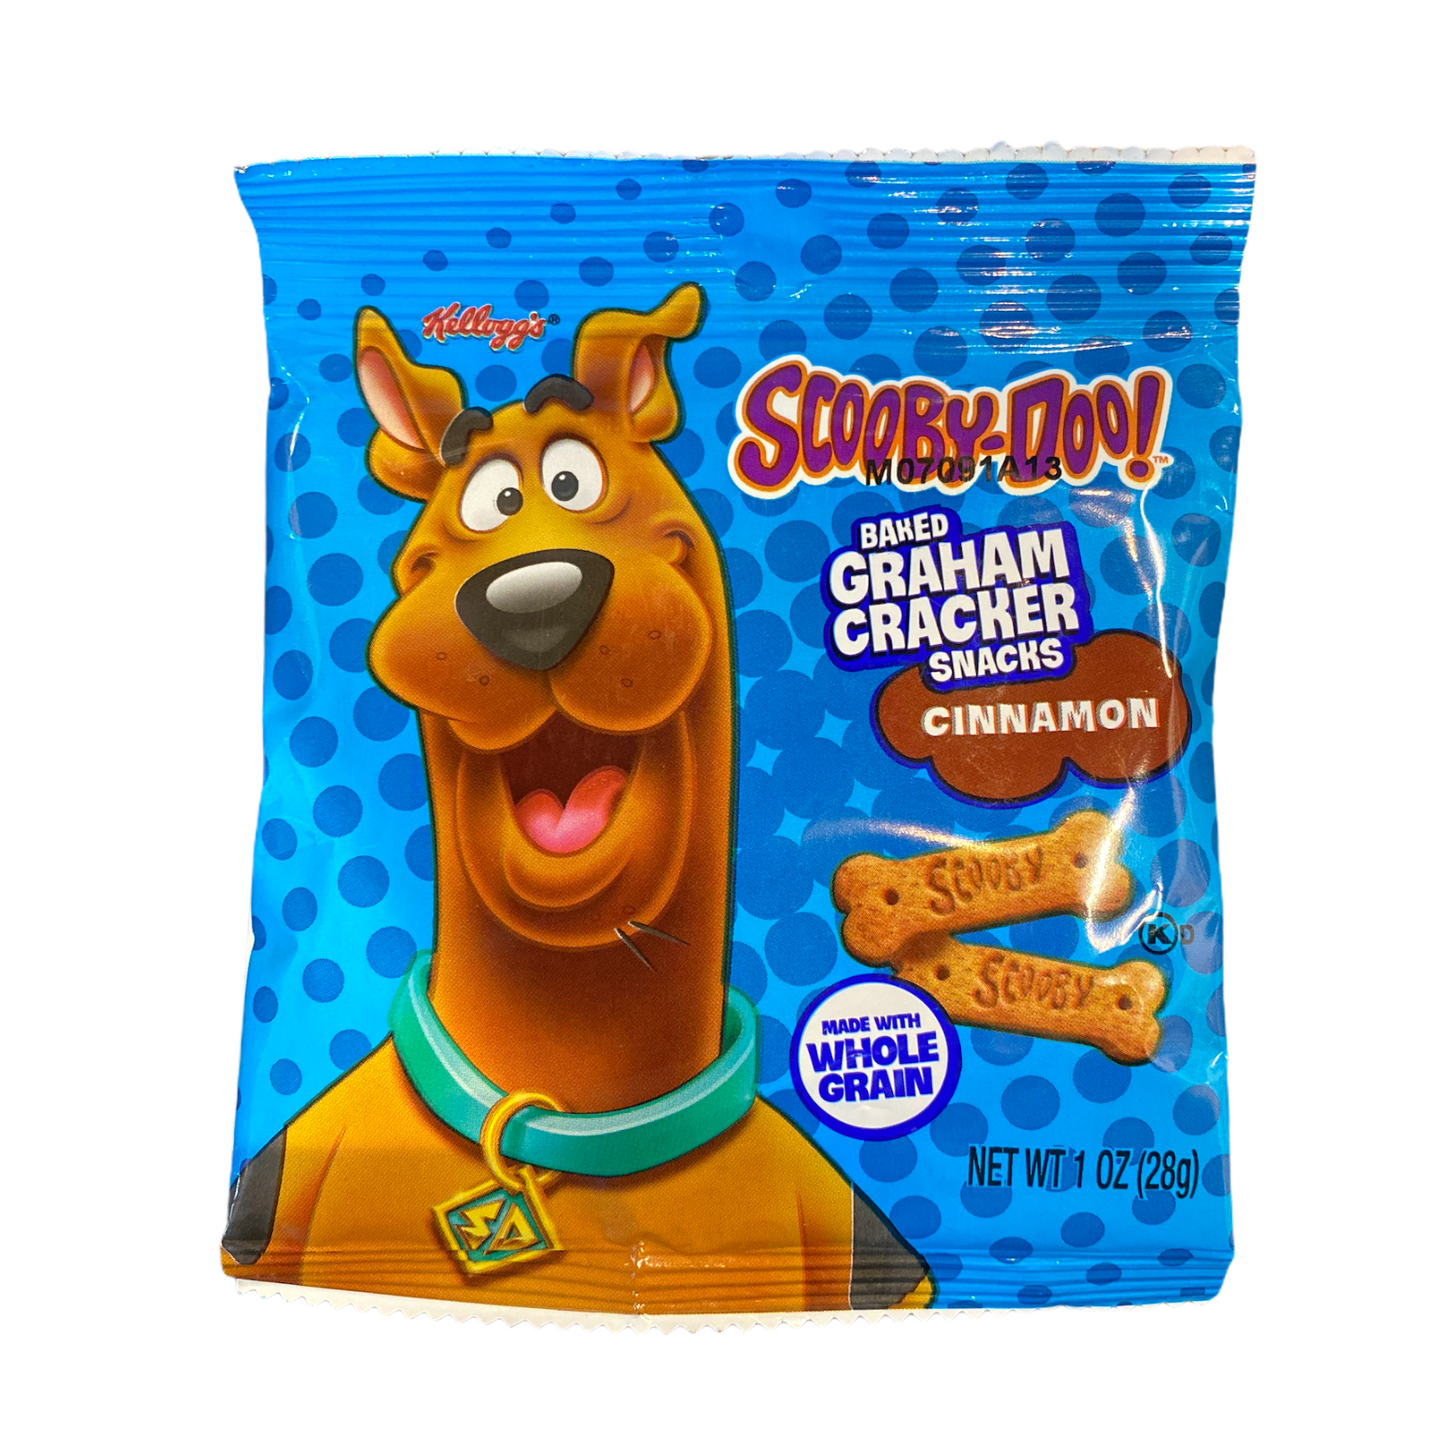 Scooby-Doo Scooby Snack Graham Cracker Cookies, 1 Ounce Bag